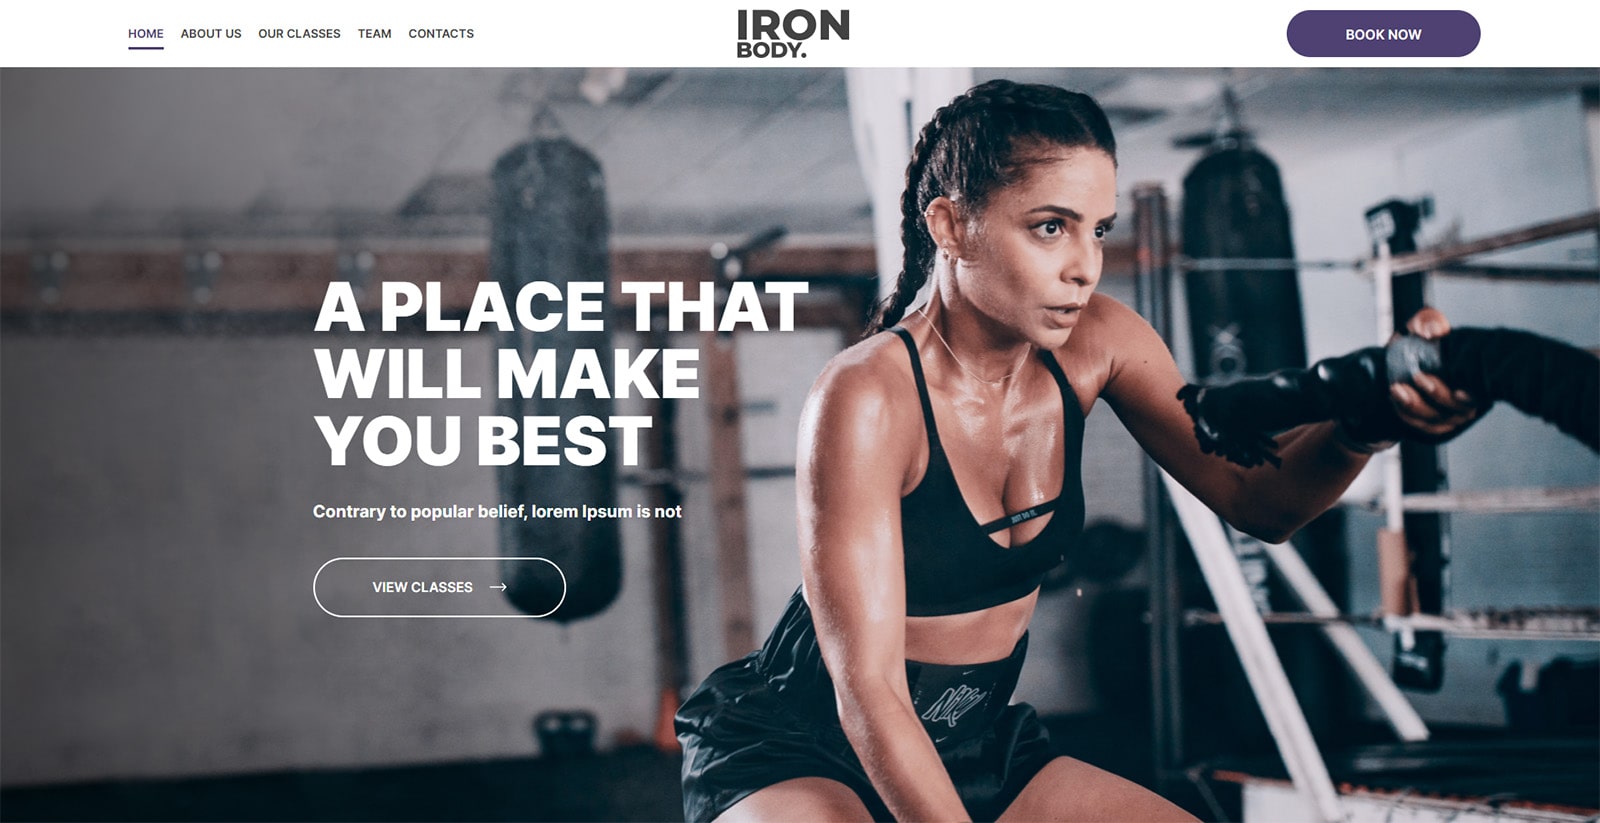 Zdjęcie IronBody, motywu WordPress oferującego nowoczesny projekt strony internetowej siłowni.